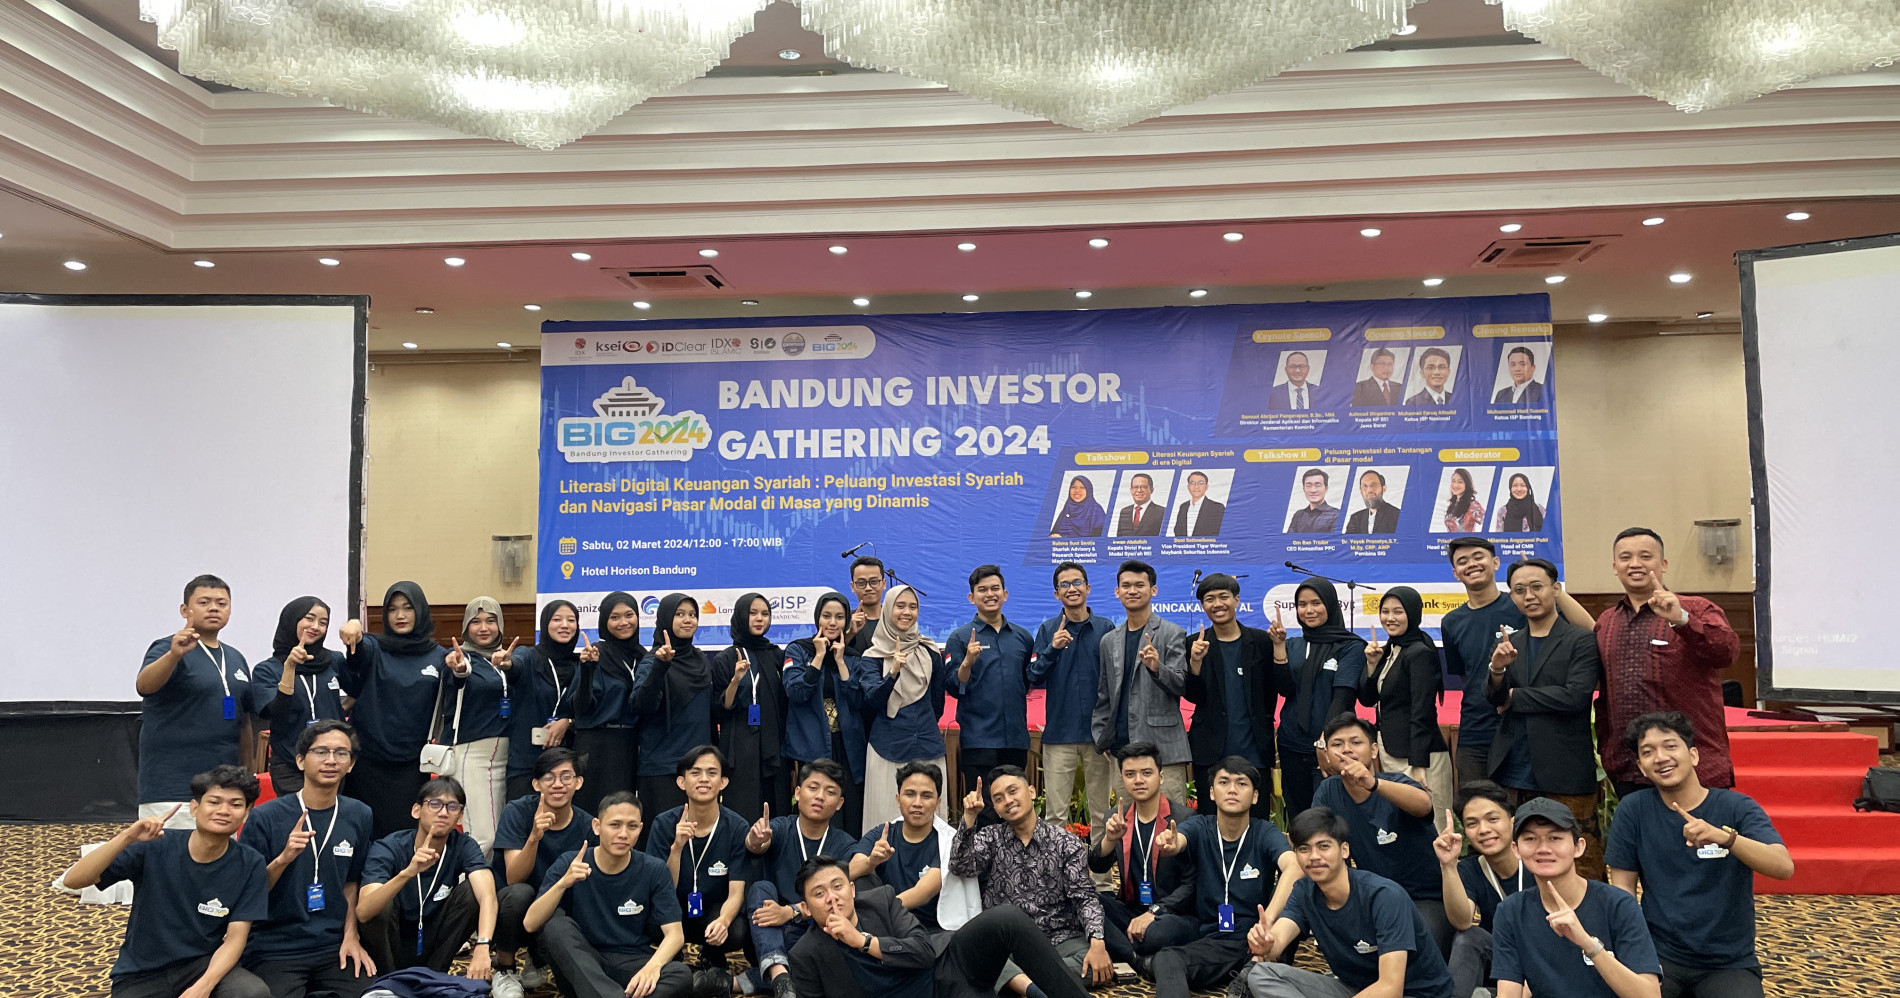 Faqihuddin (penulis) bersama Komunitas ISP Bandung di Bandung Investor Gathering 2024